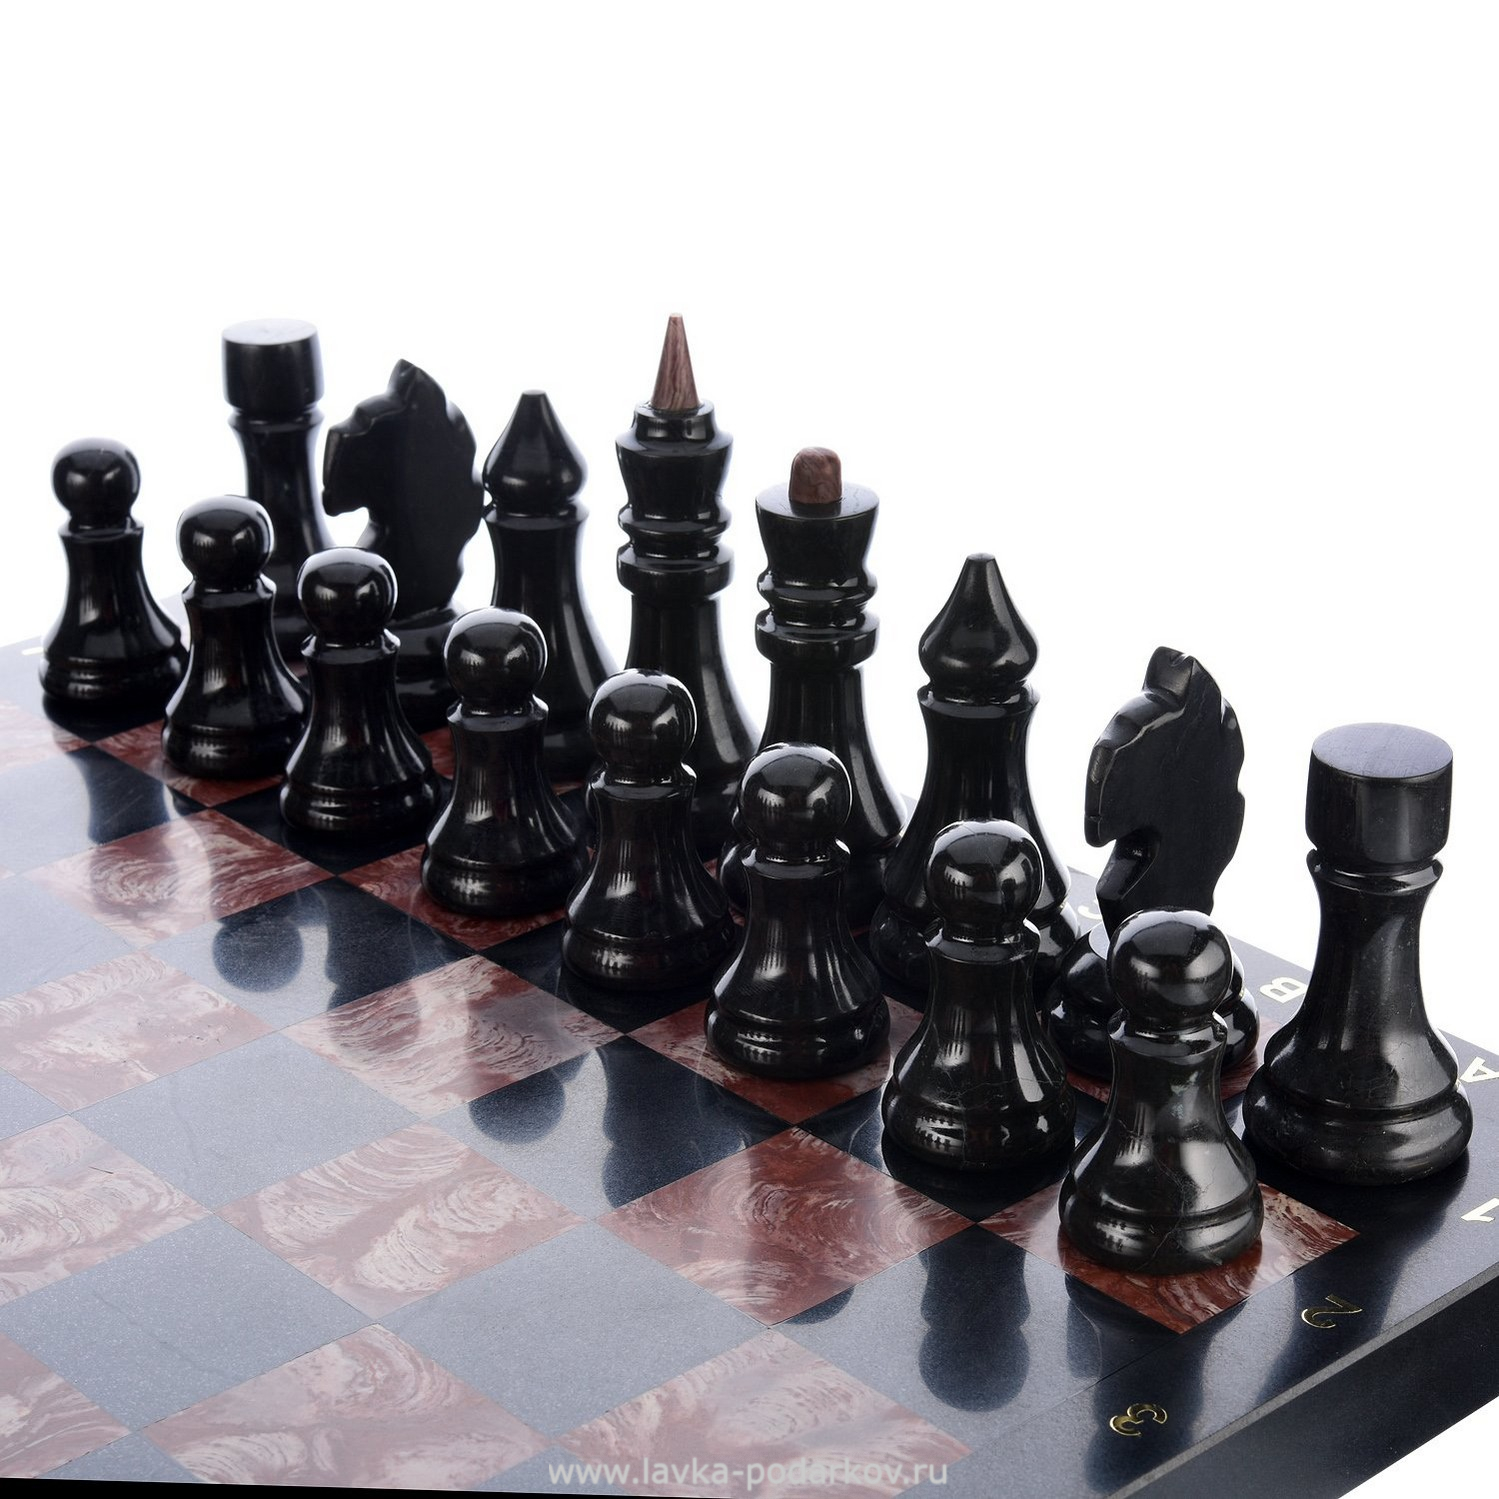 Шахматы из камня. Шахматы из Зажогинского шунгита. Шахматы из натурального камня. Мраморная шахматная доска.